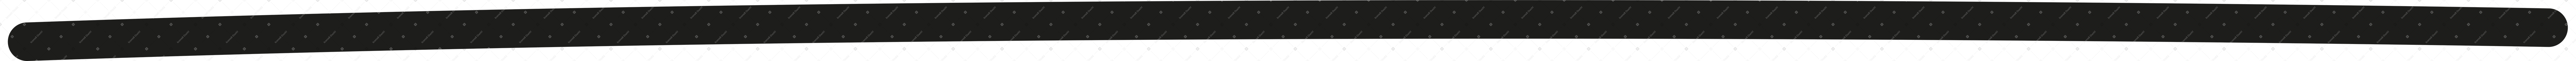 фоновая линия в PNG, SVG